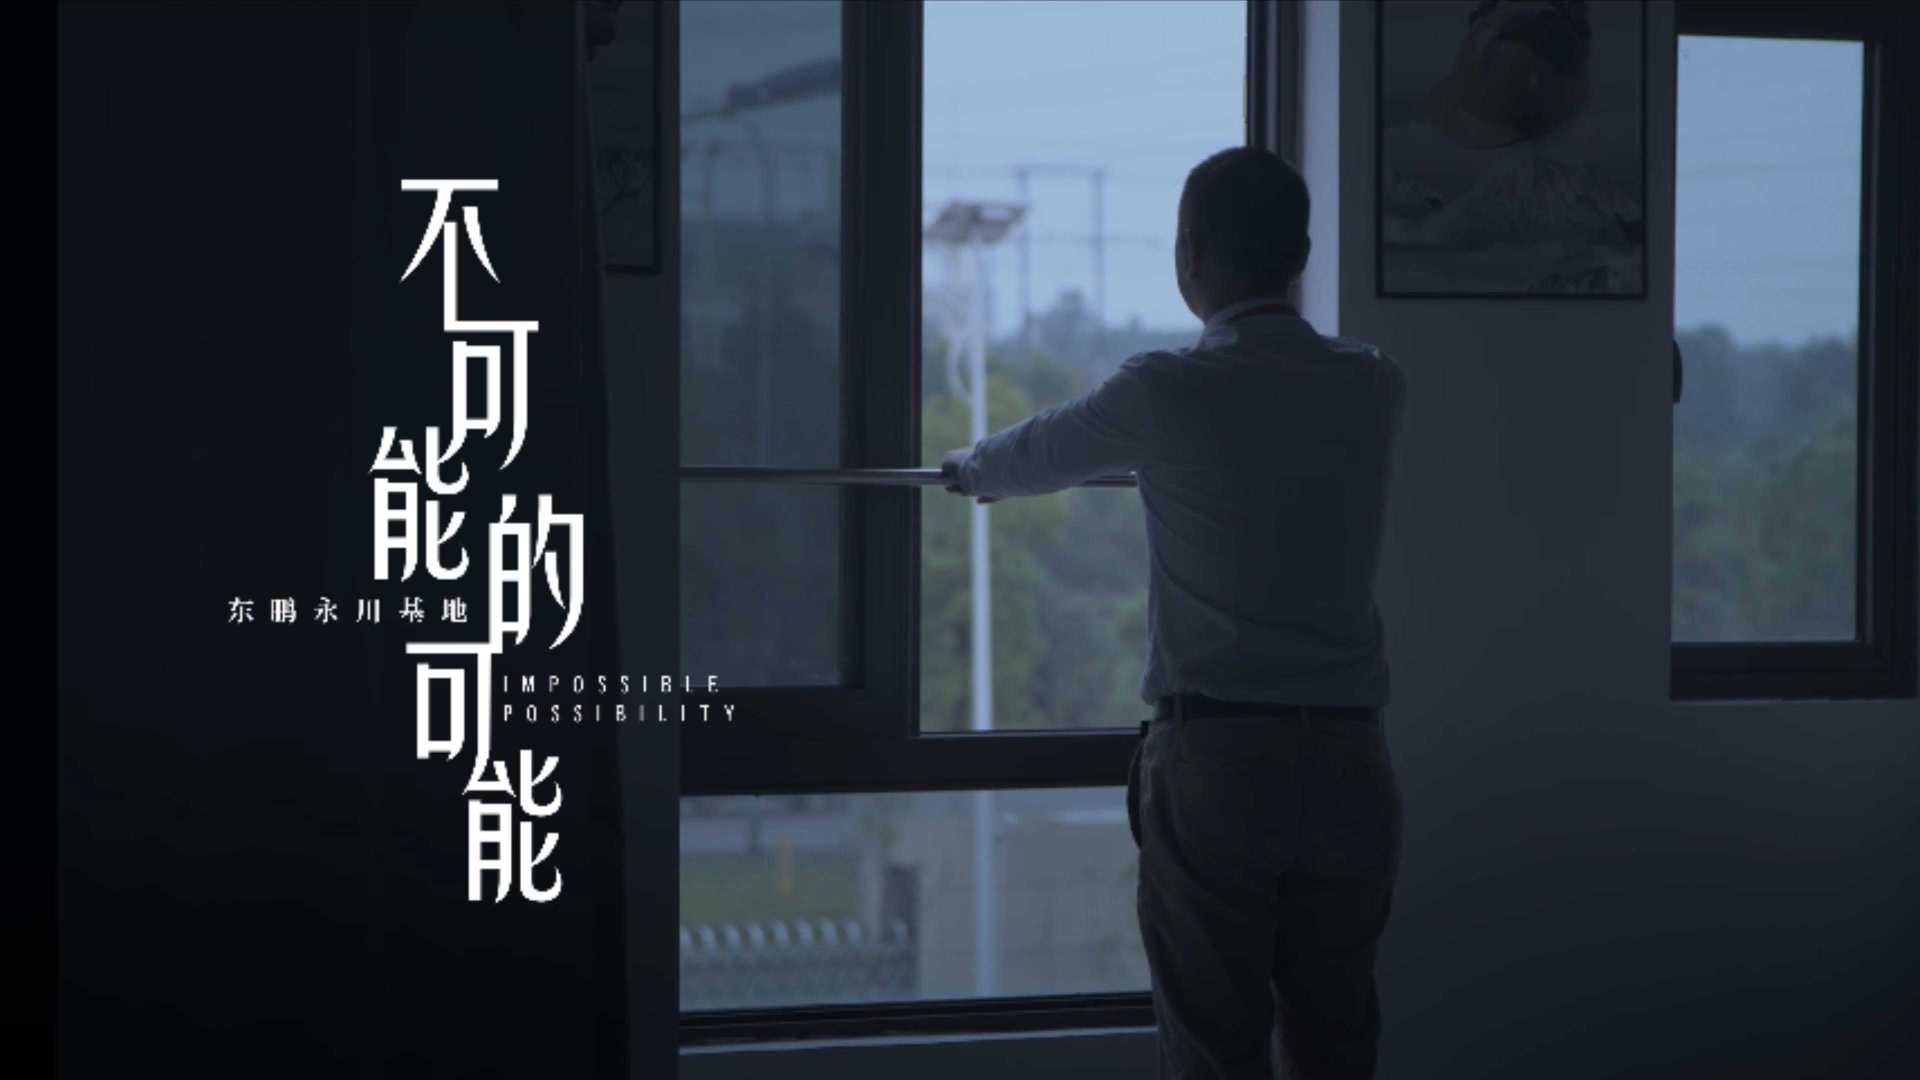 东鹏瓷砖-永川工厂纪录片《不可能的可能》